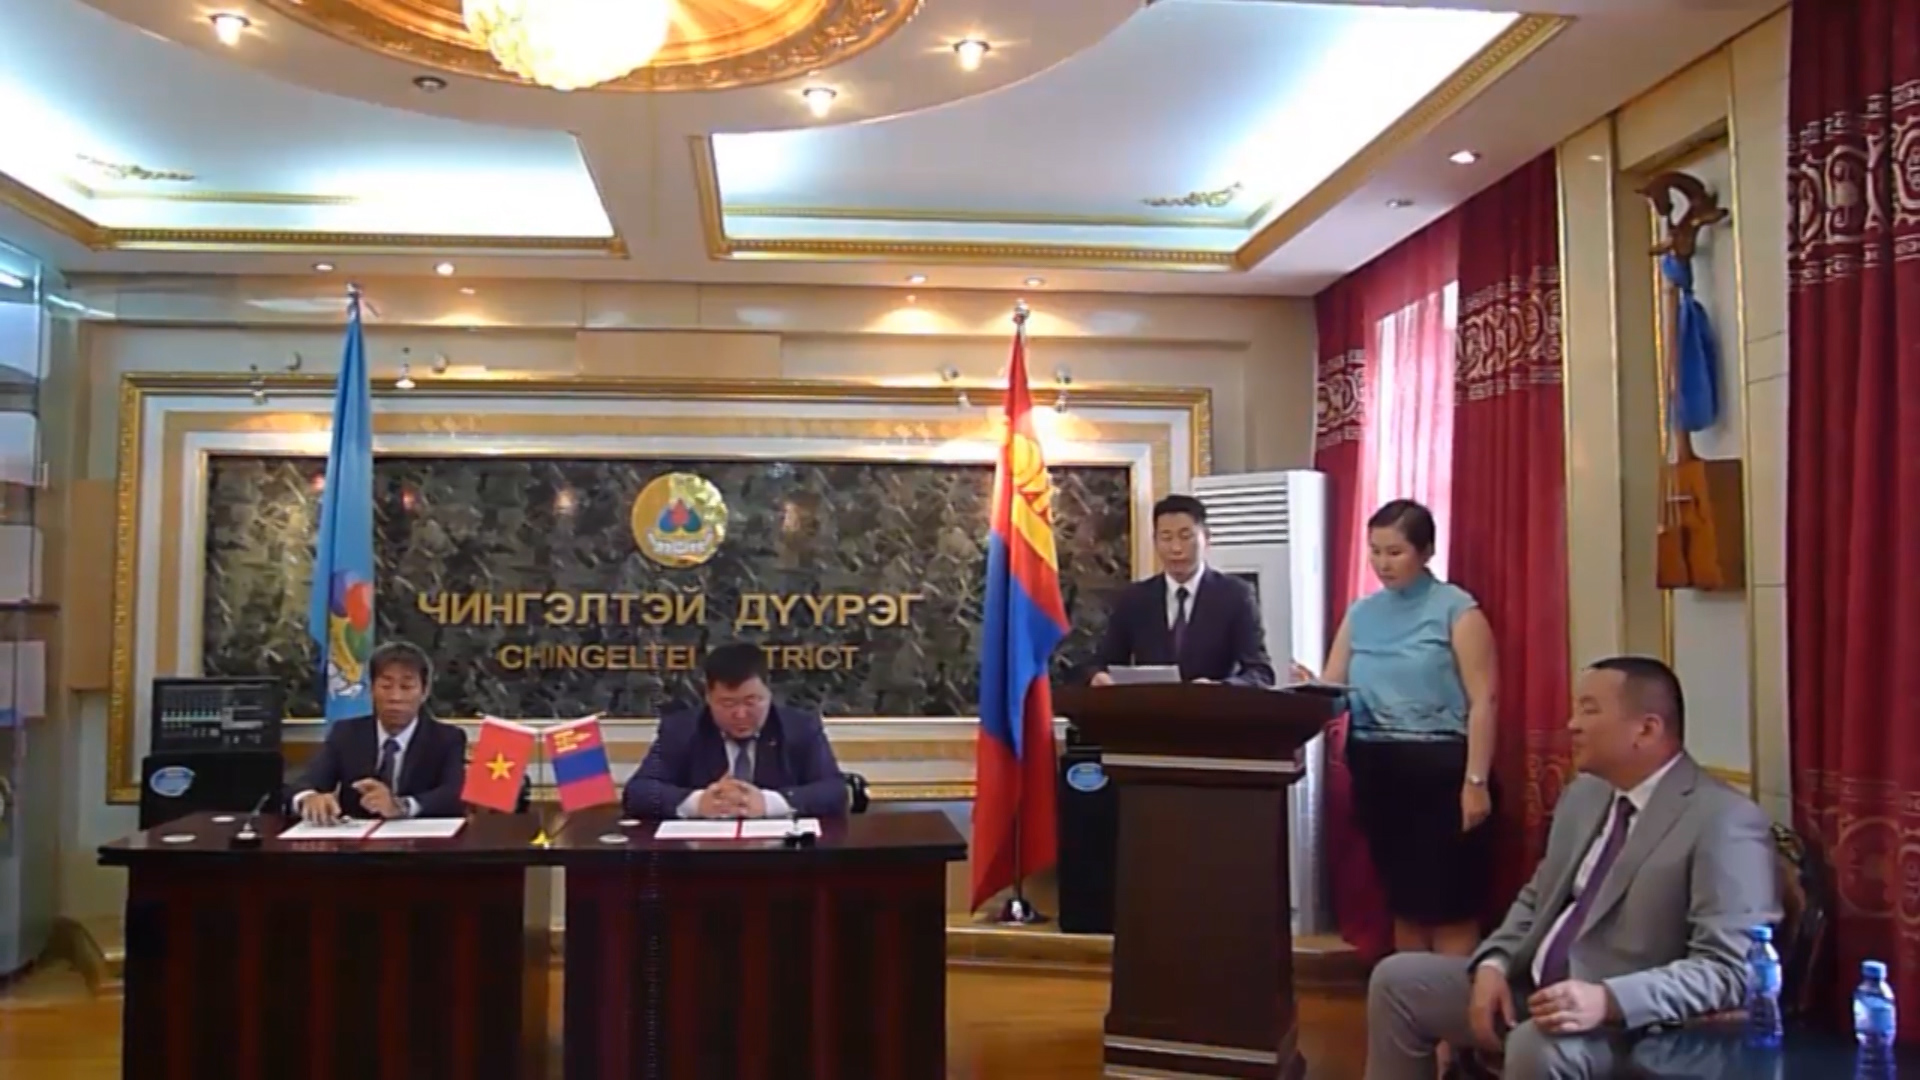 Quận Thủ Đức, Thành phố Hồ Chí Minh ký kết hợp tác với Quận Chingeltei, Thủ đô Ulan Bator, Mông Cổ